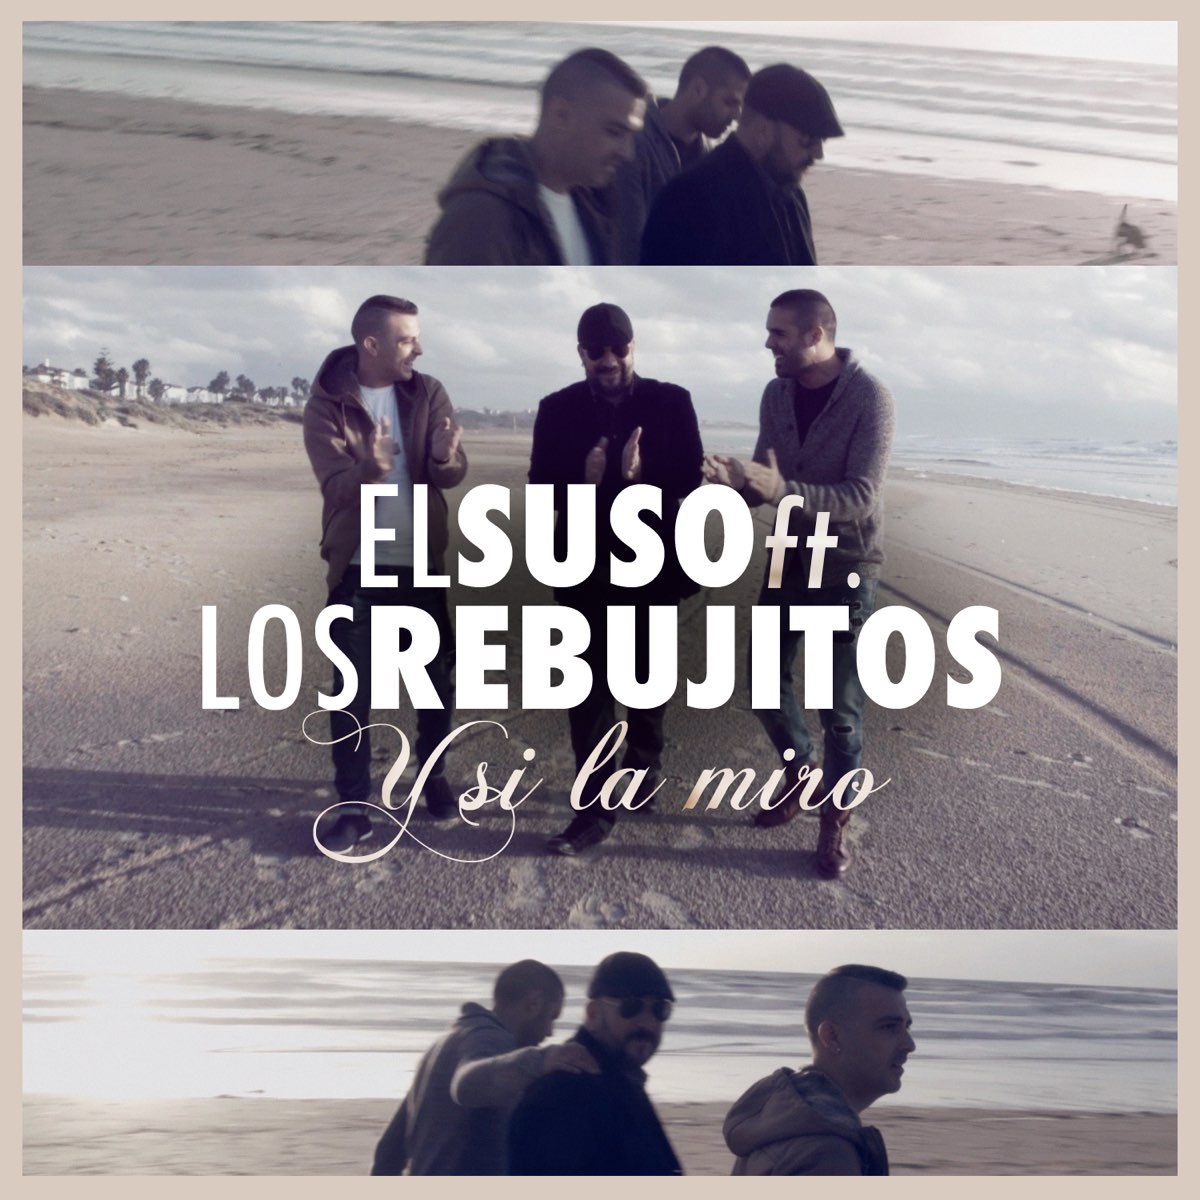 Y Si la Miro (feat. Los Rebujitos) - Single by El Suso on Apple Music